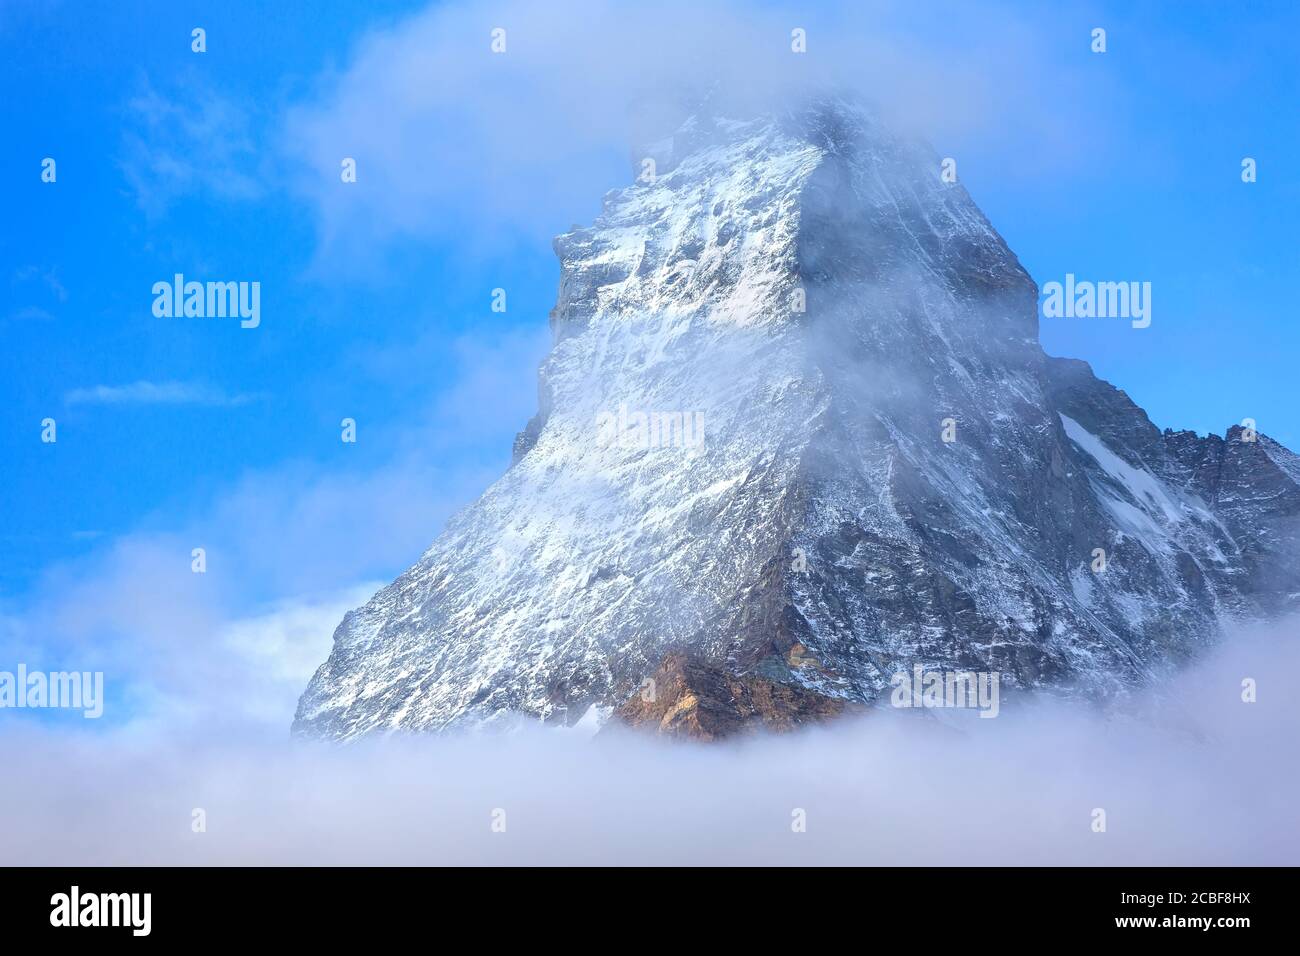 Monte neve Monte Cervino picco tra le nuvole, primo piano, Zermatt, Svizzera, Alpi svizzere Foto Stock